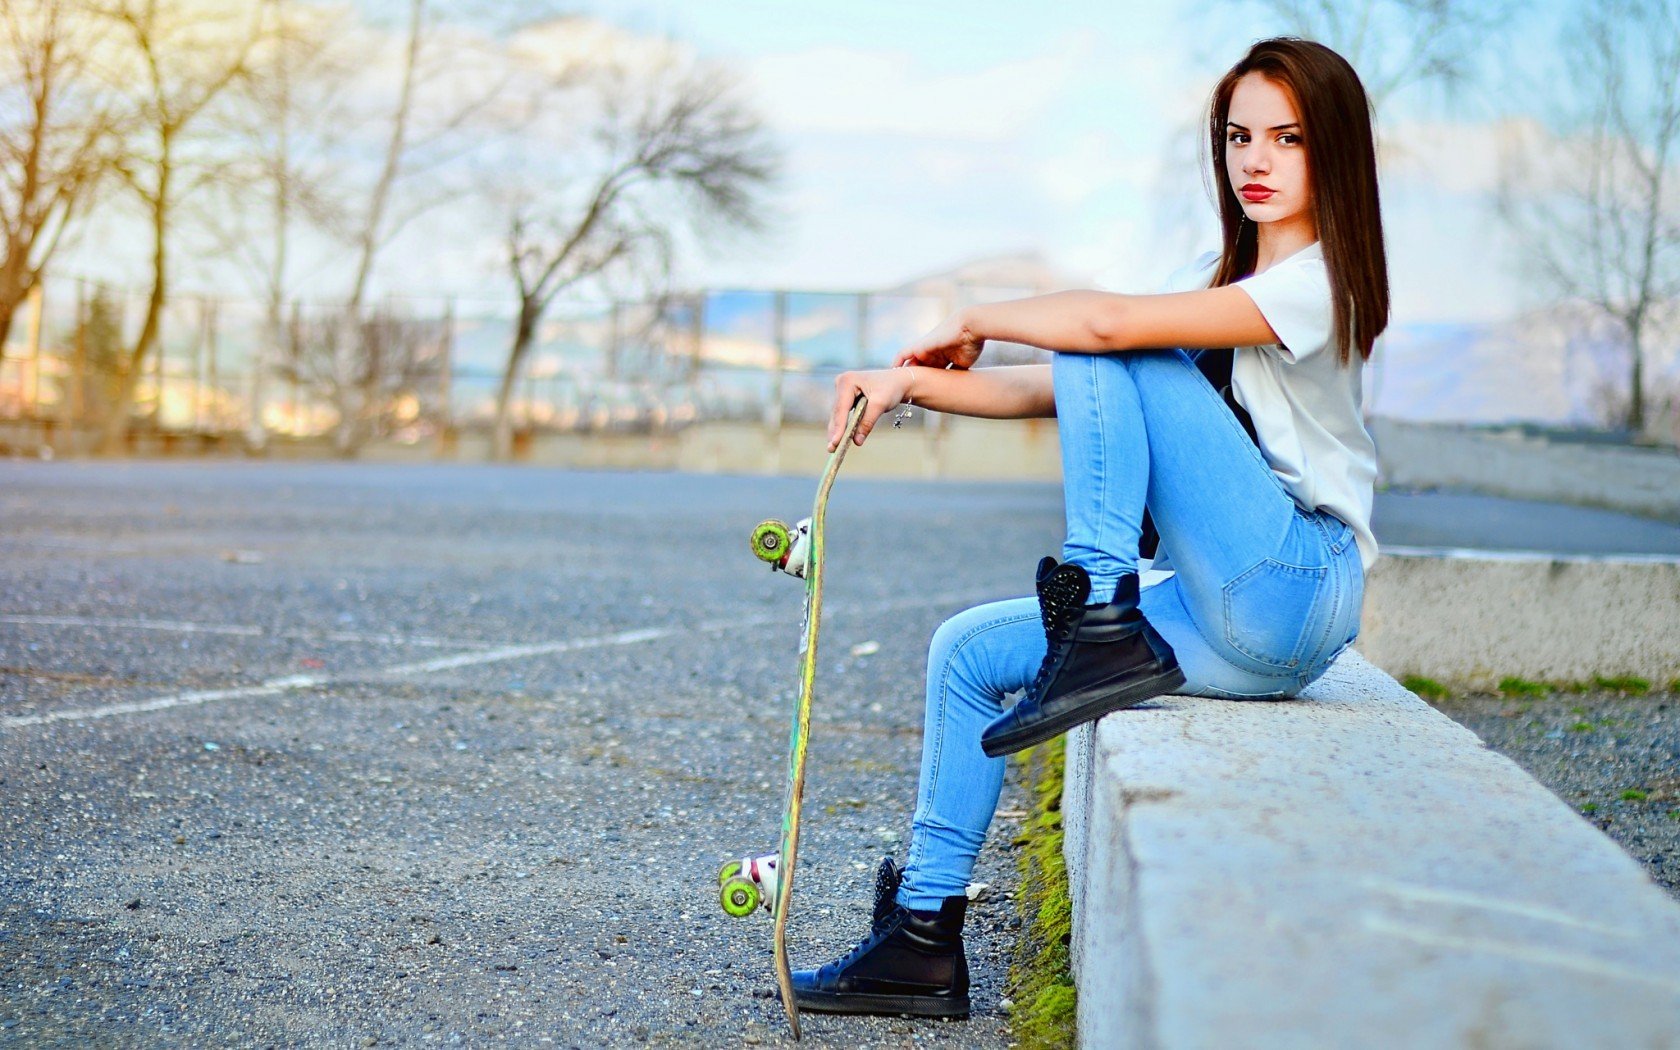 women, Model, Jeans, Road, Skateboard Wallpaper